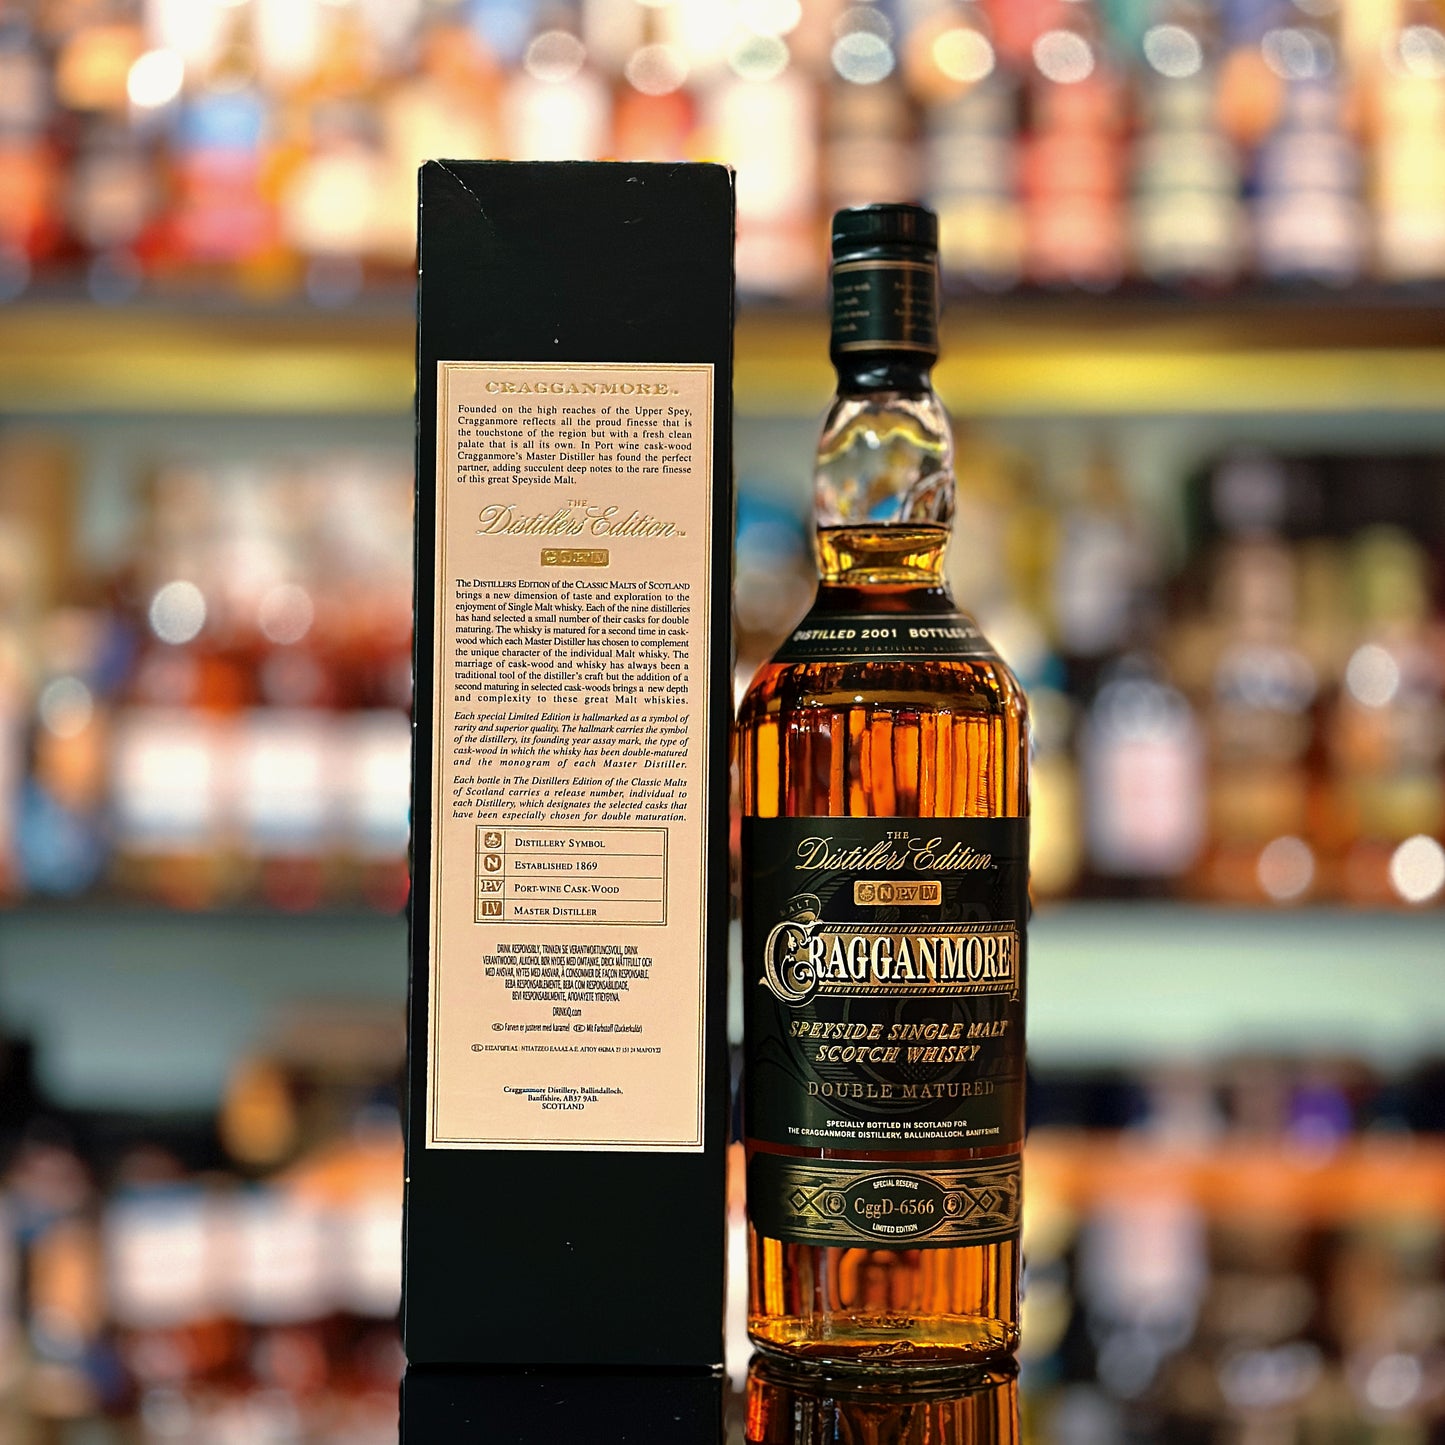 克拉格摩爾2001-2014年蒸餾師限定版蘇格蘭單一麥芽威士忌